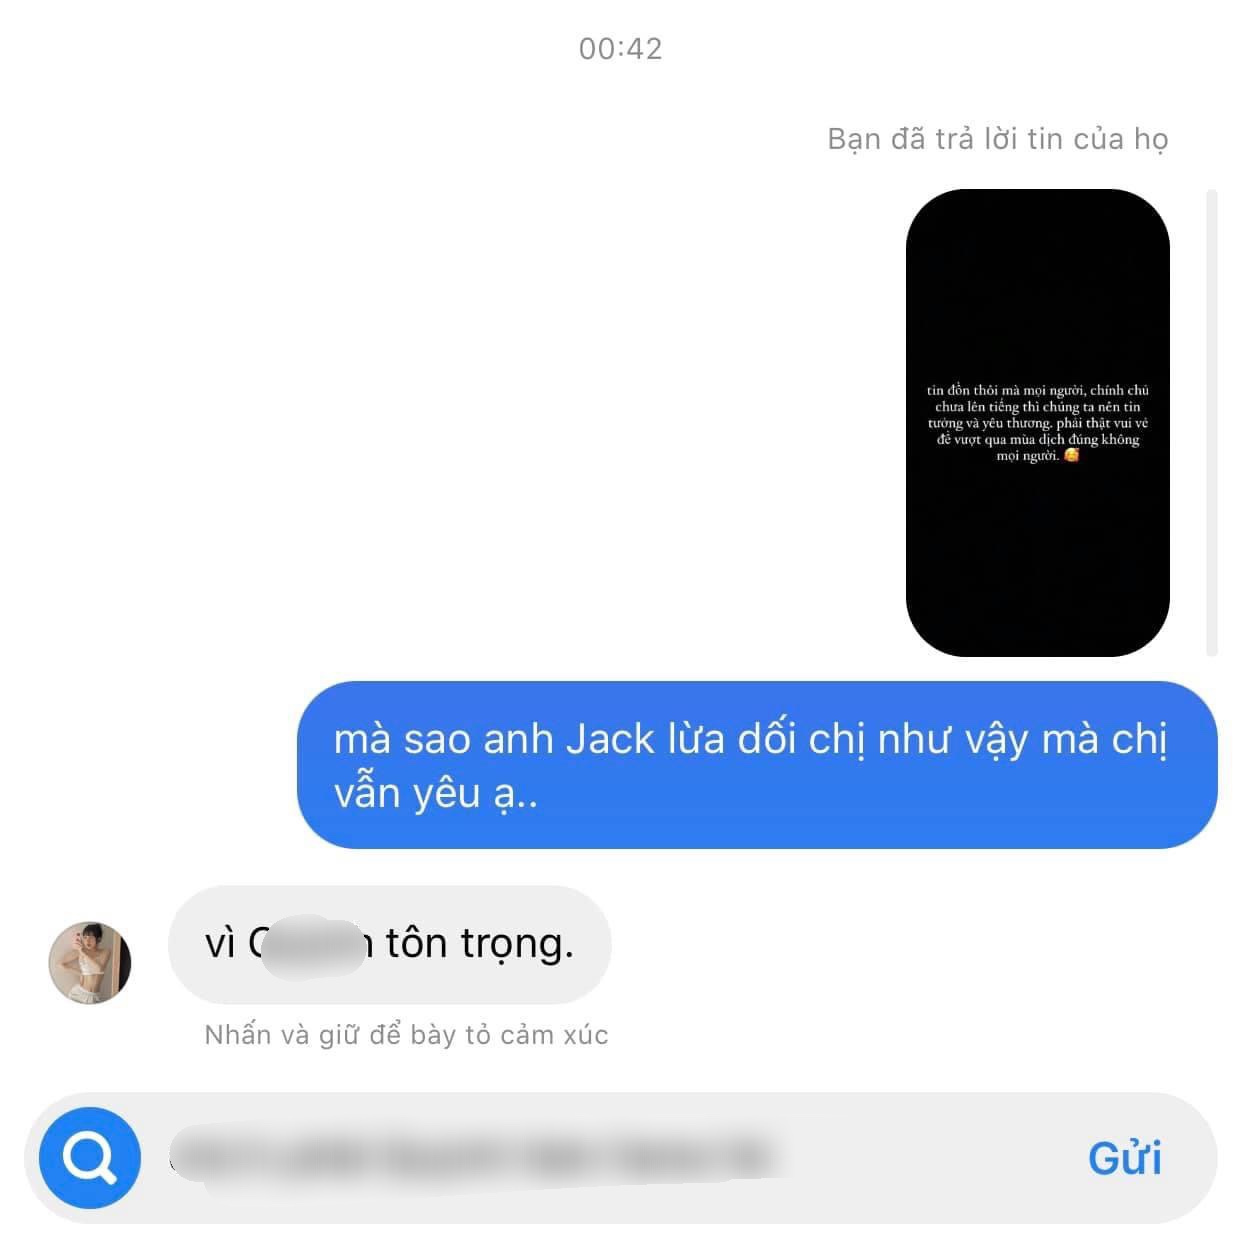 Q.T.L thừa nhận mối quan hệ với Jack